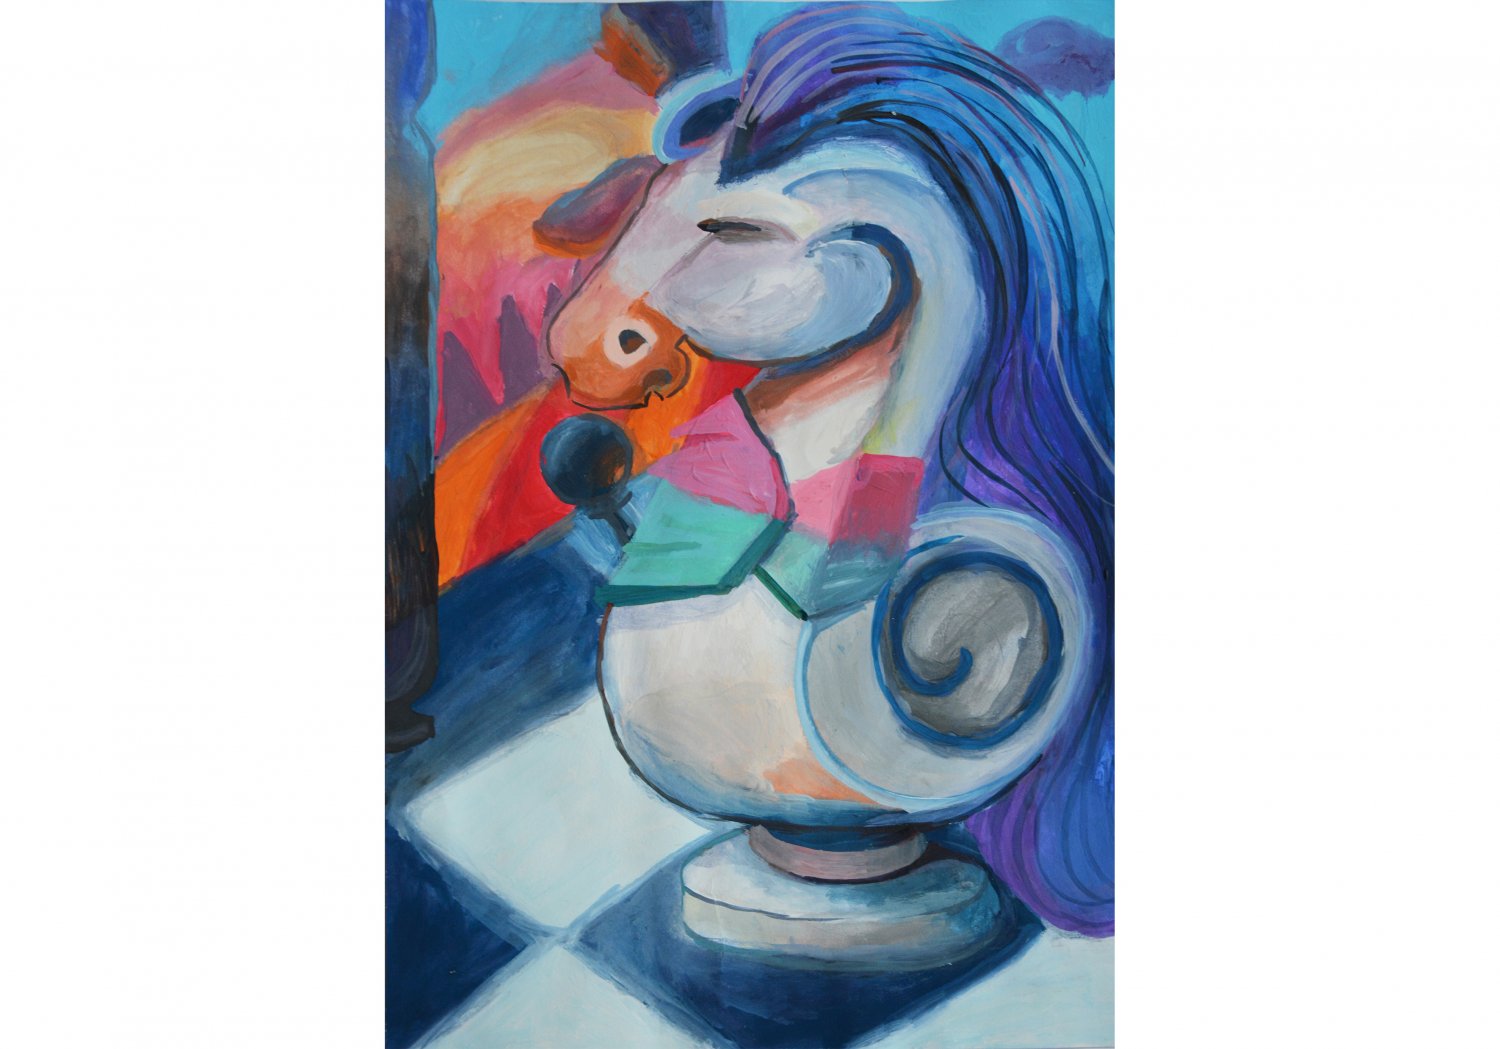 II miejsce: Klaudia Kałużna. Tytuł “Konik”
Kolorowe i inspirujące przedstawienie figury szachowej. Przepiękne kolory z dominacją czerwieni  błękitu i bieli.